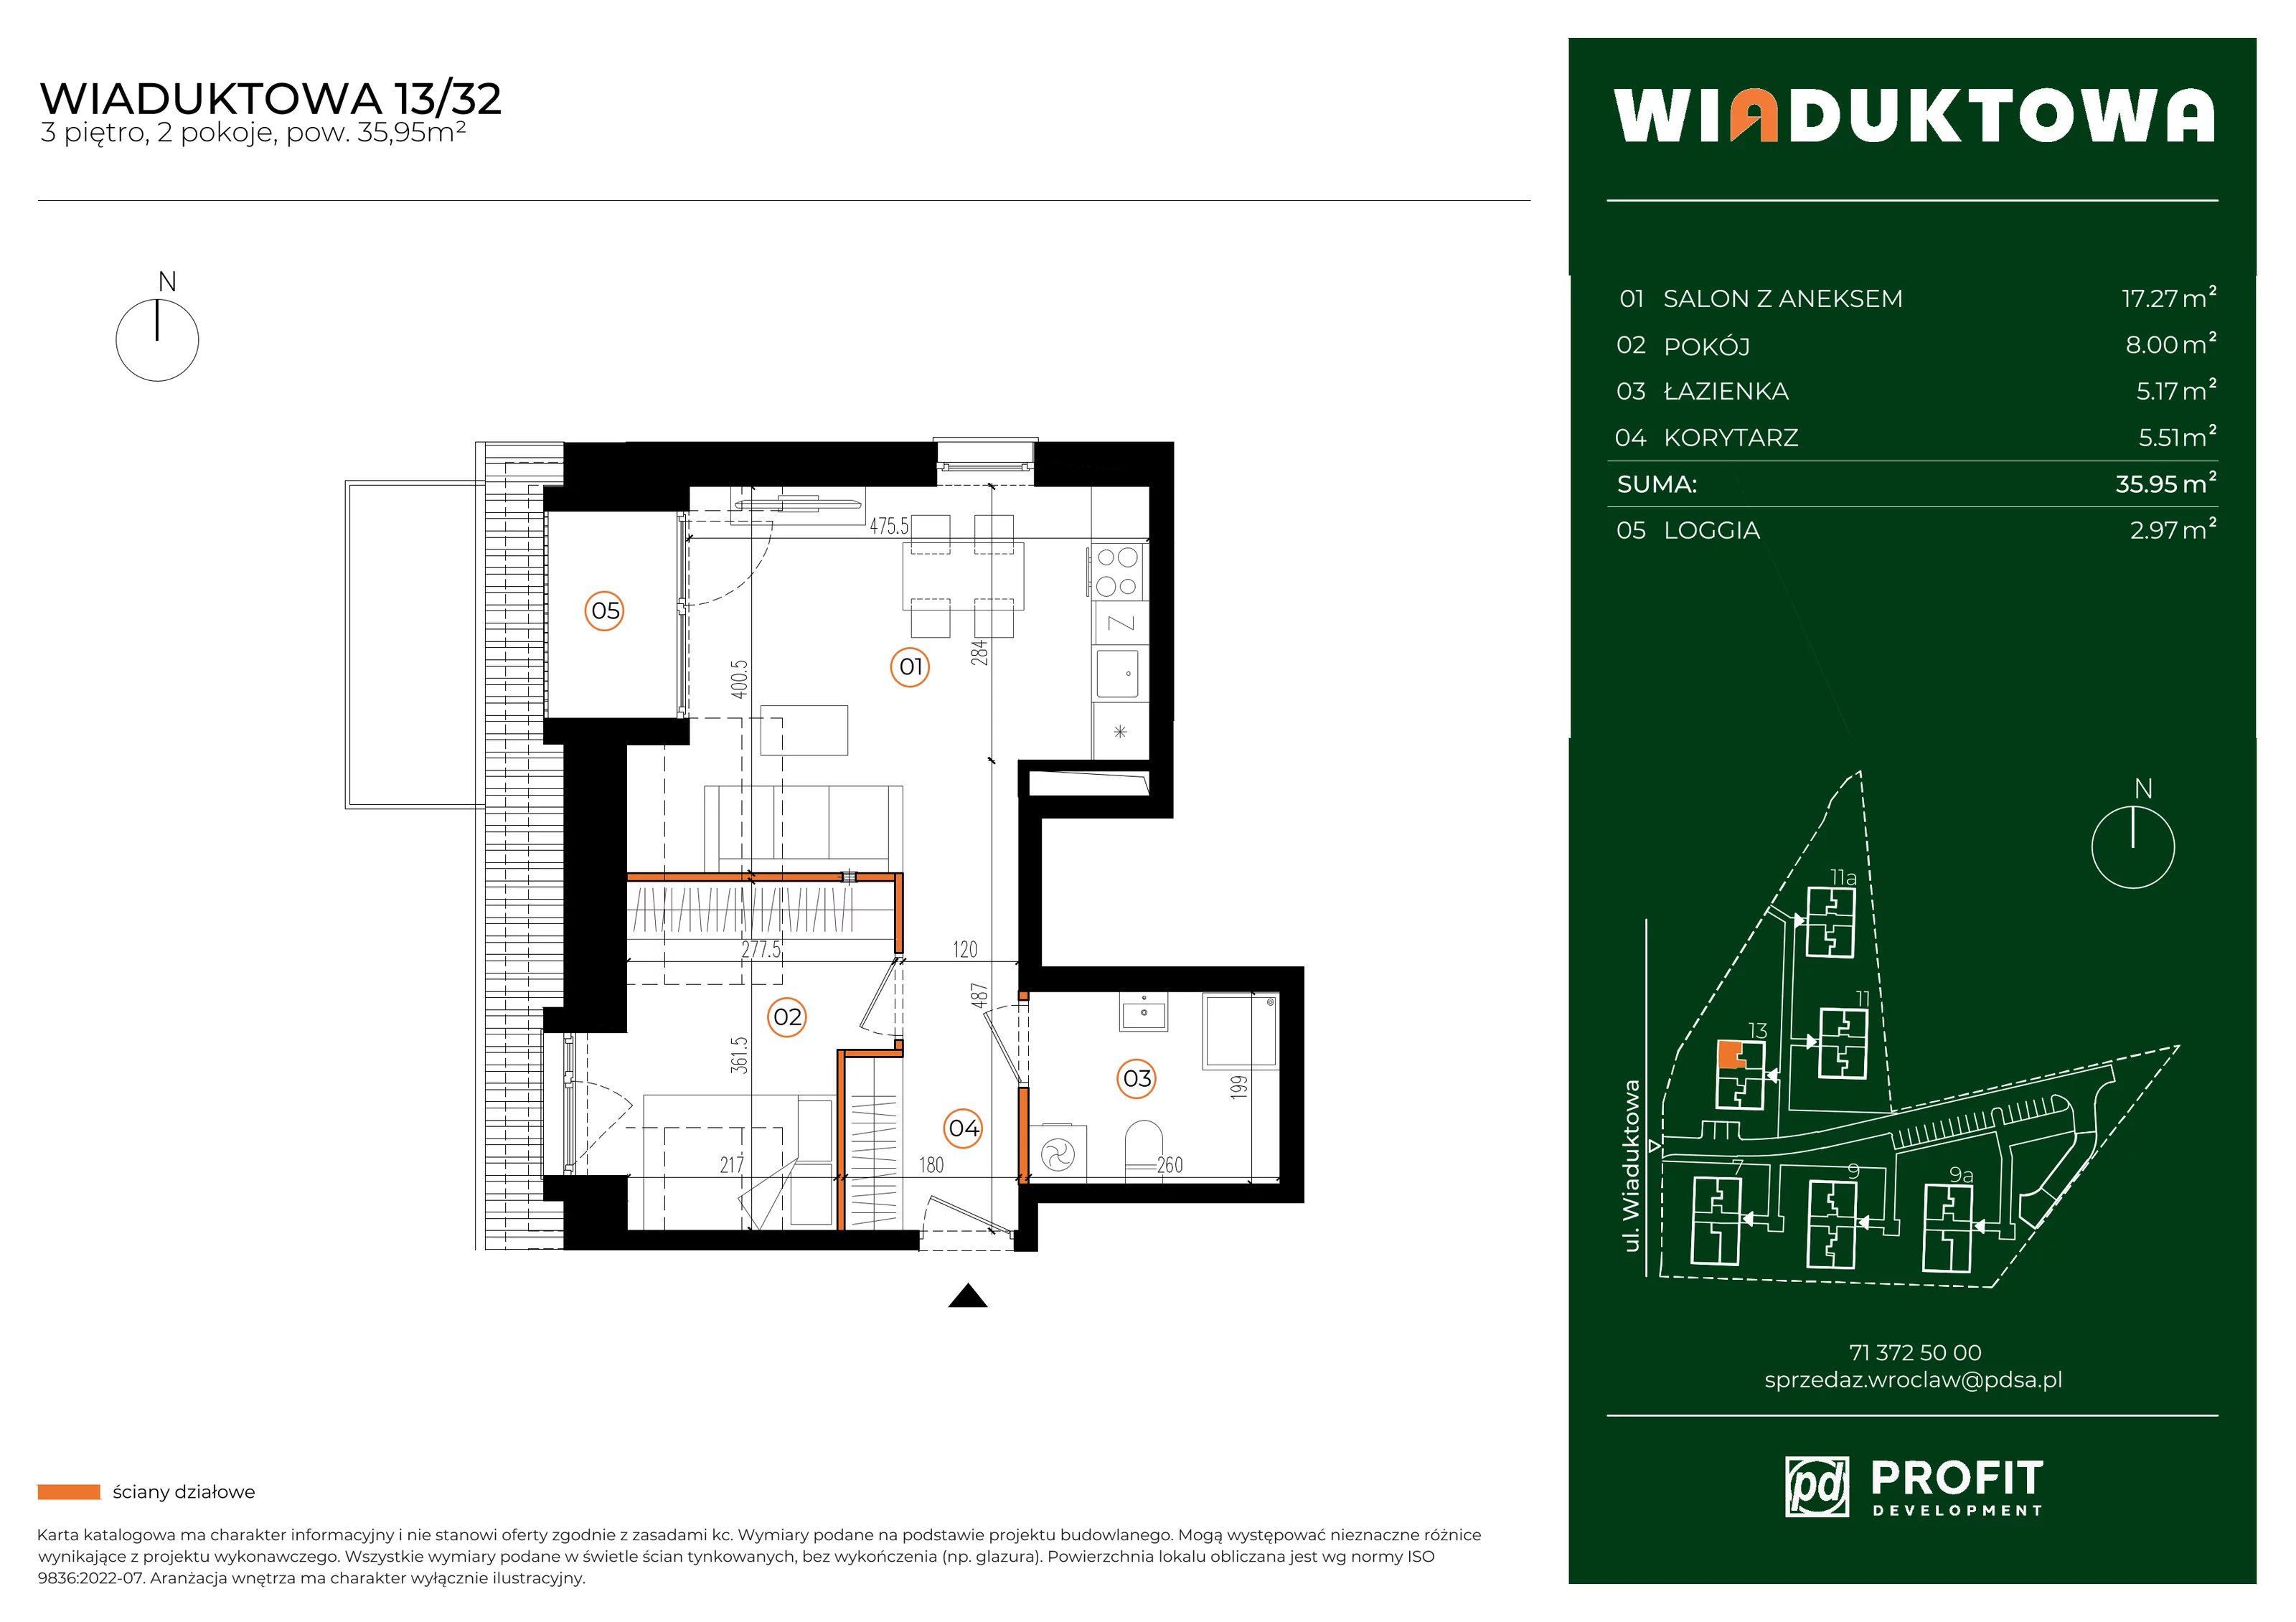 Mieszkanie 35,95 m², piętro 3, oferta nr WI/13/32, Wiaduktowa, Wrocław, Krzyki-Partynice, Krzyki, ul. Wiaduktowa